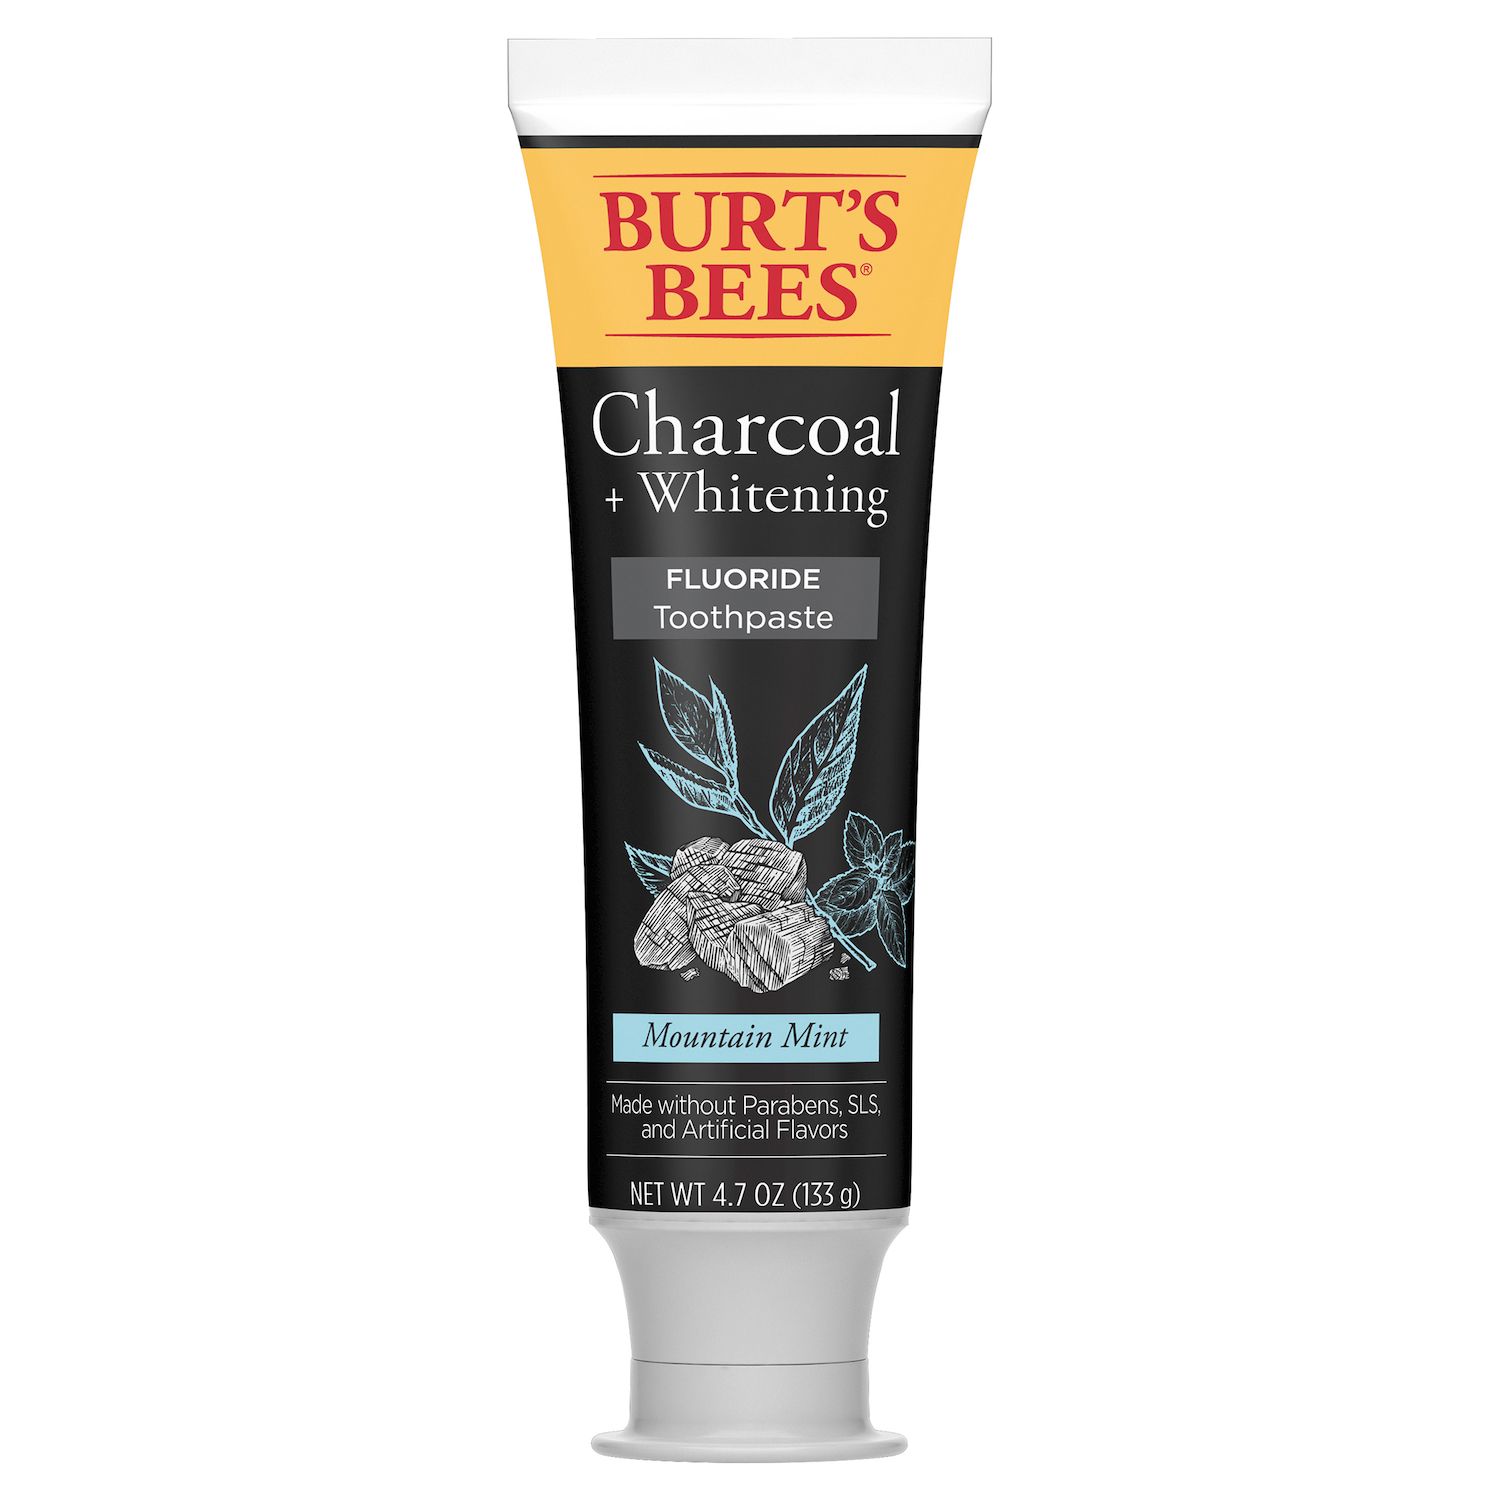 burt's bees teething gel